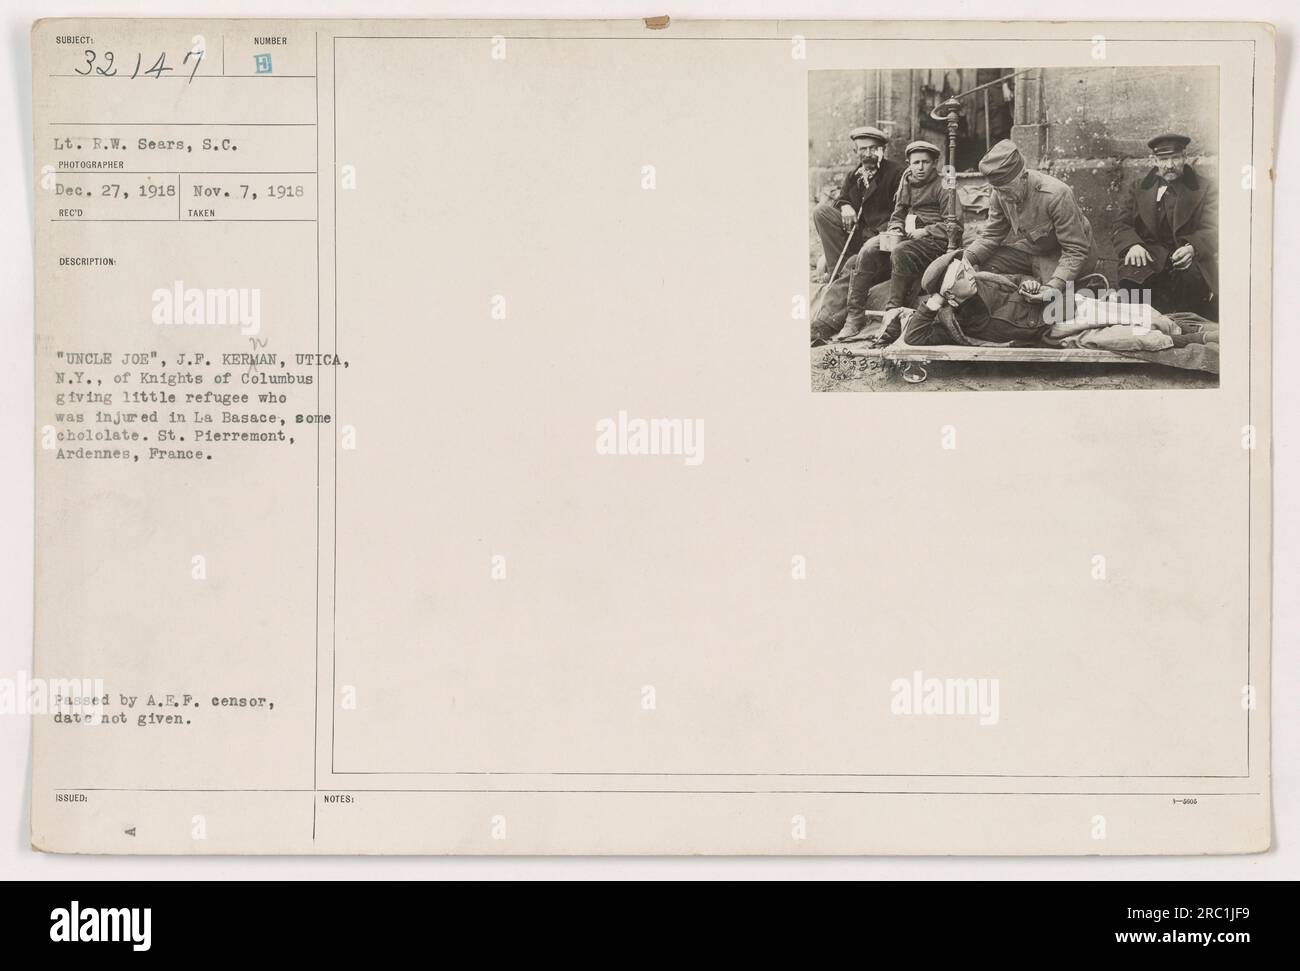 Leutnant R.W. Sears, S.C., hat dieses Bild am 27. Dezember 1918 in St. Pierremont, Ardennen, Frankreich. Das Foto zeigt „Onkel Joe“, ein Mitglied der Ritter von Kolumbus, der einem jungen Flüchtling, der in der Stadt La Basace verletzt wurde, Hilfe leistet. Das Bild hat den A.E.P.-Zensor bestanden, aber es wurde kein bestimmtes Datum für seine Veröffentlichung angegeben. Stockfoto